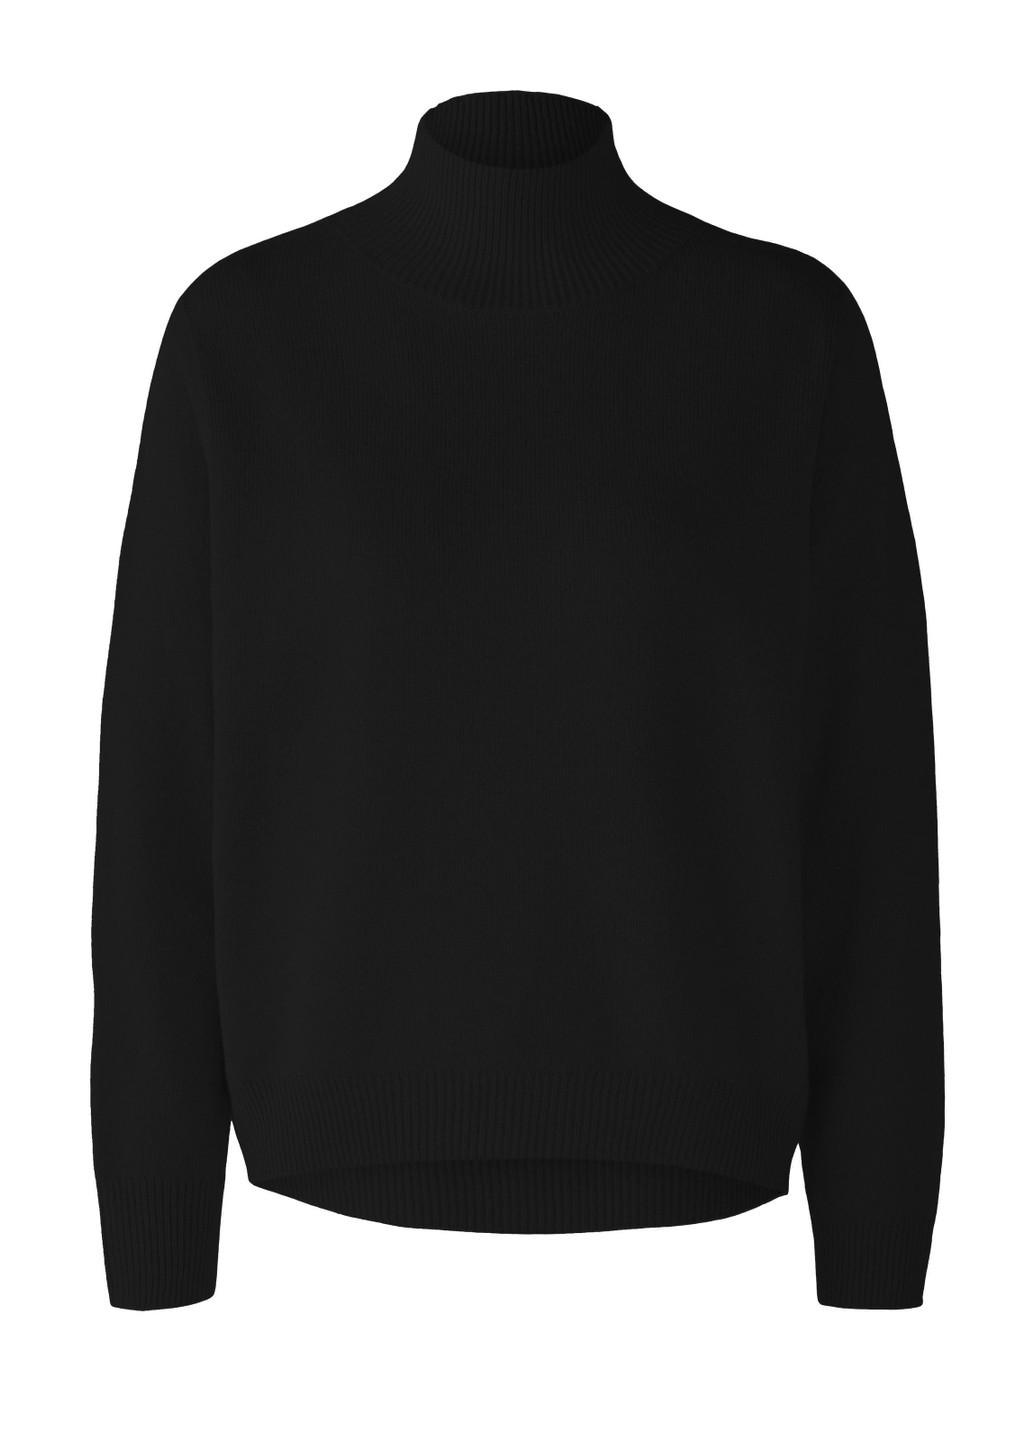 Черный демисезонный женский свитер черный джемпер Oui